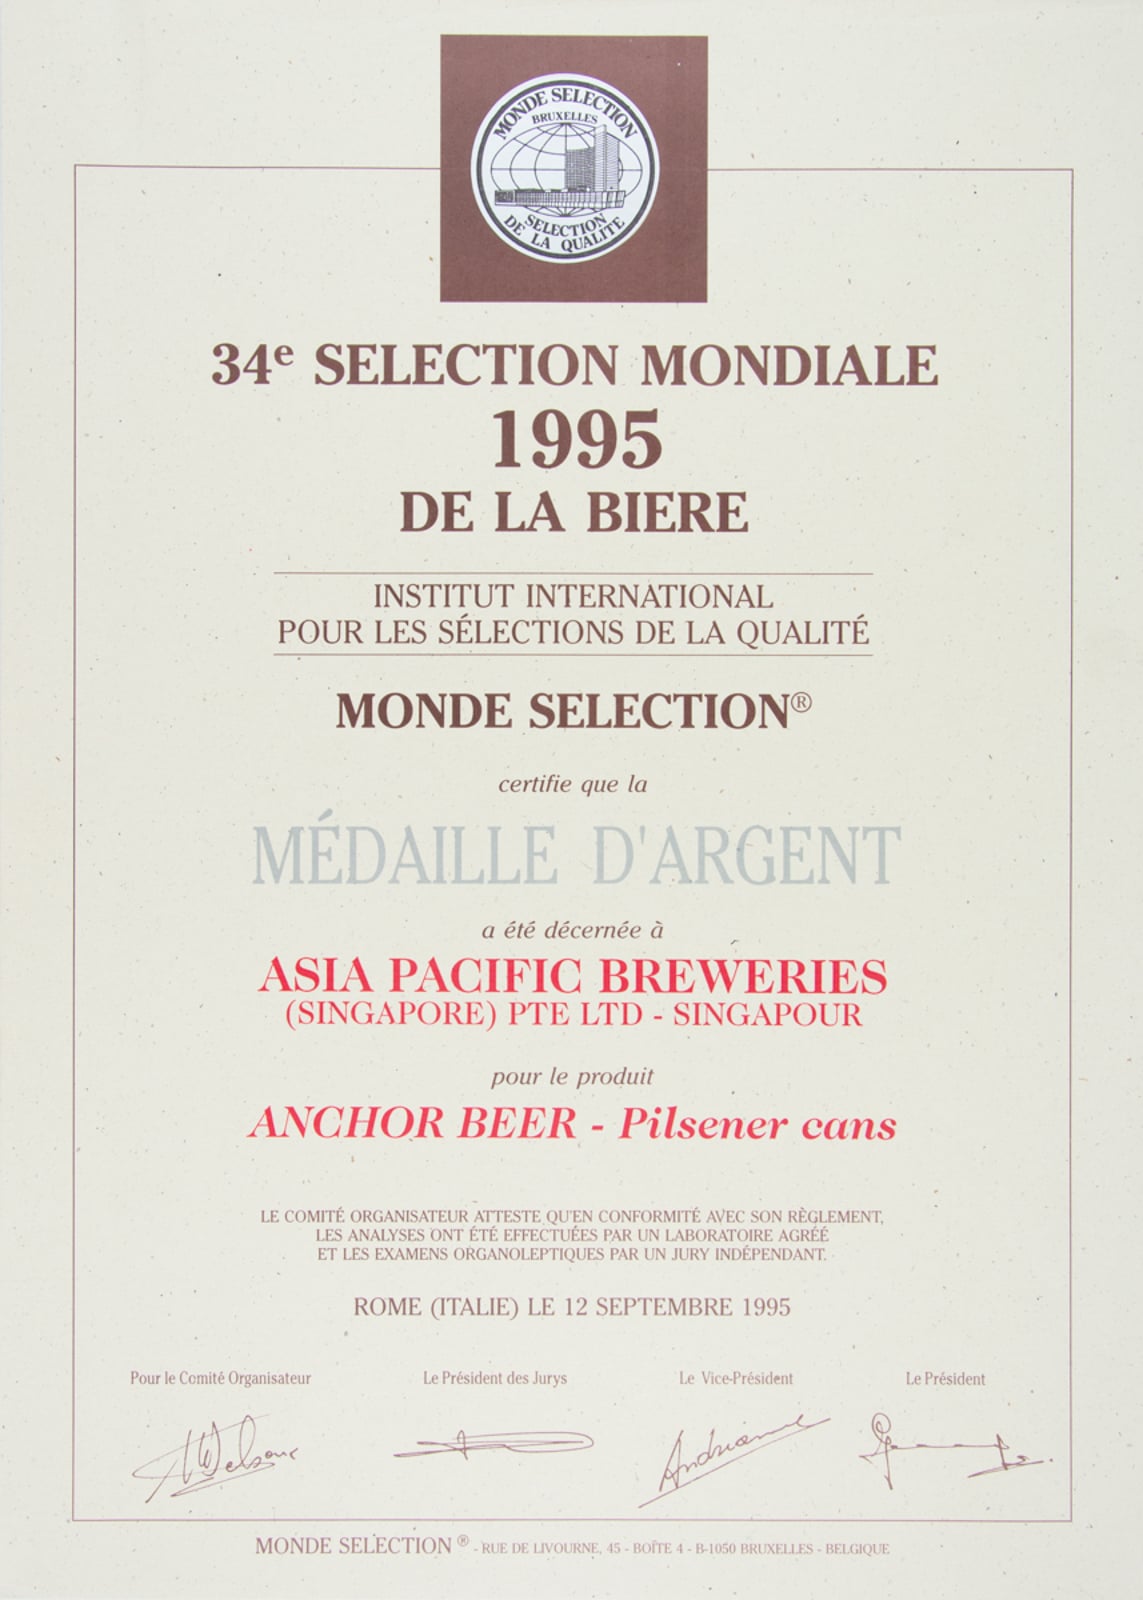 Anchor Beer - Pilsener (cans) - Médaille d'Argent, Monde Sélection Certificate 1995